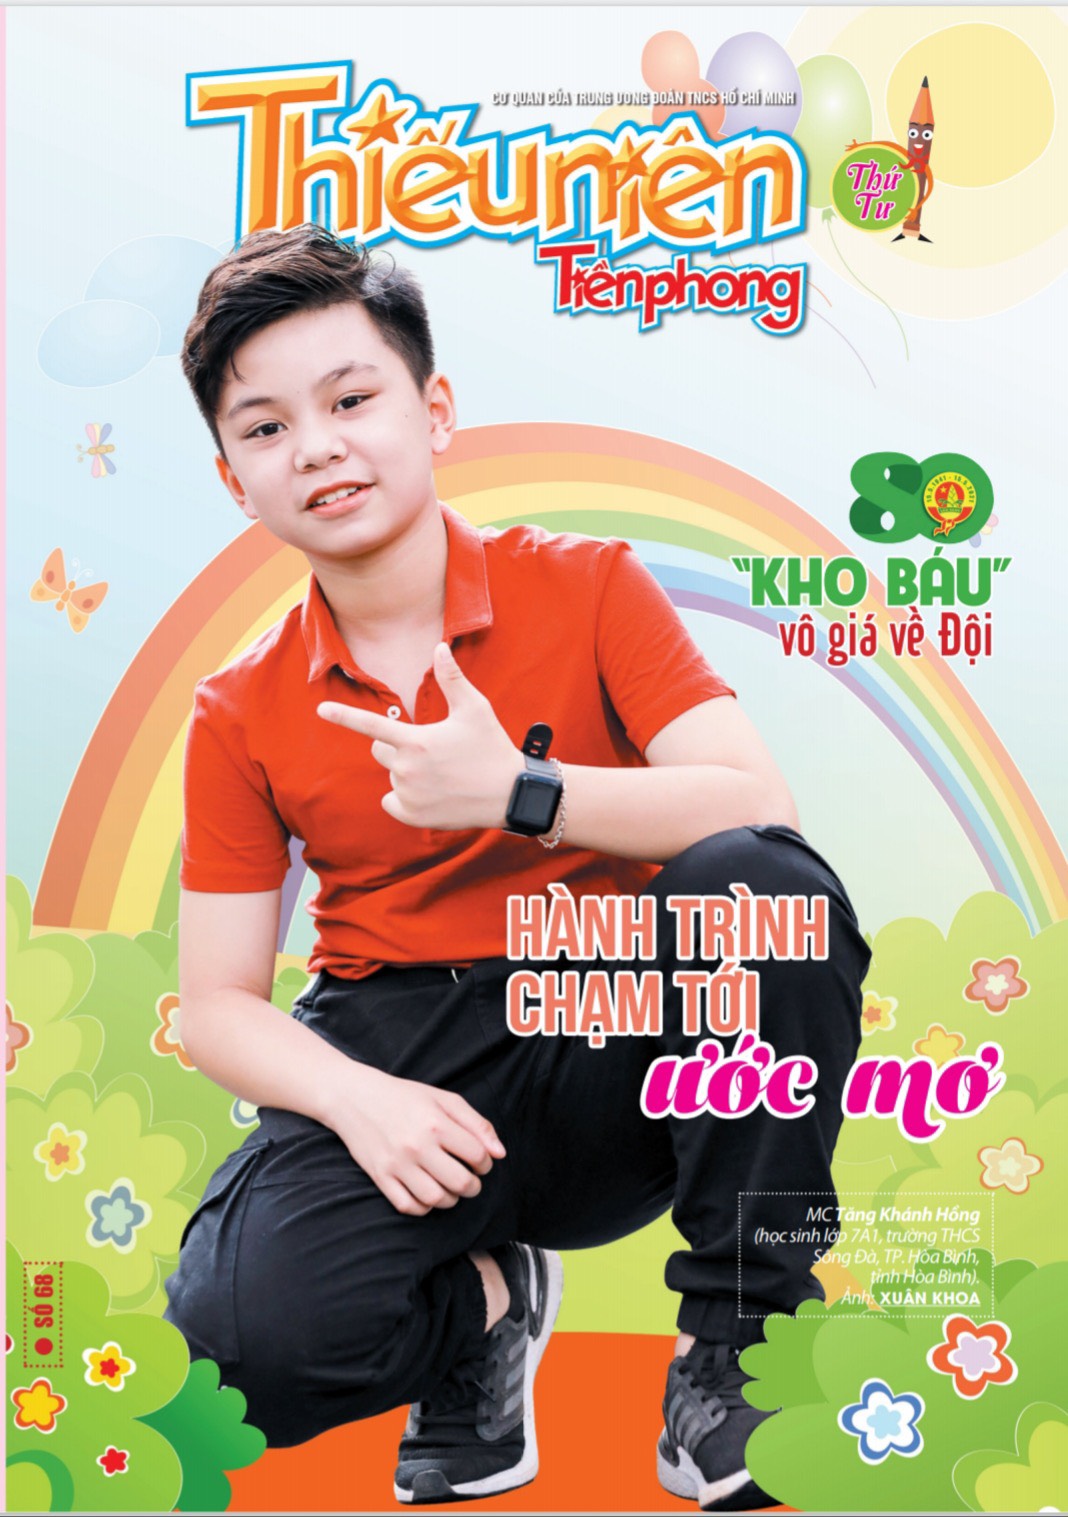 Tăng Khánh Hồng – gương mặt sáng trang bìa báo Thiếu niên Tiền Phong và Nhi đồng